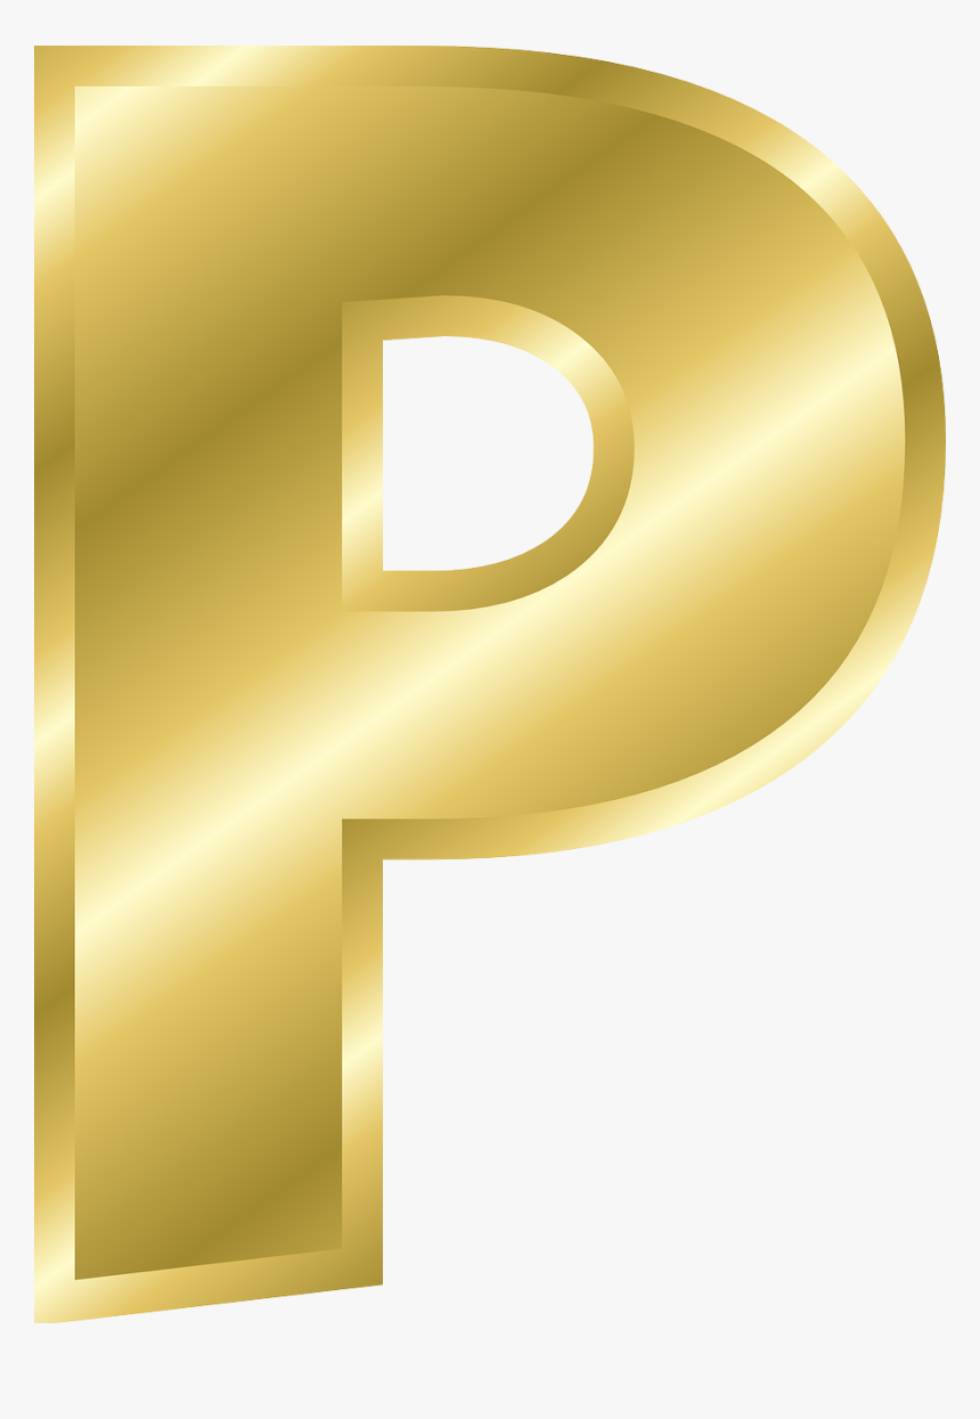 de letter P